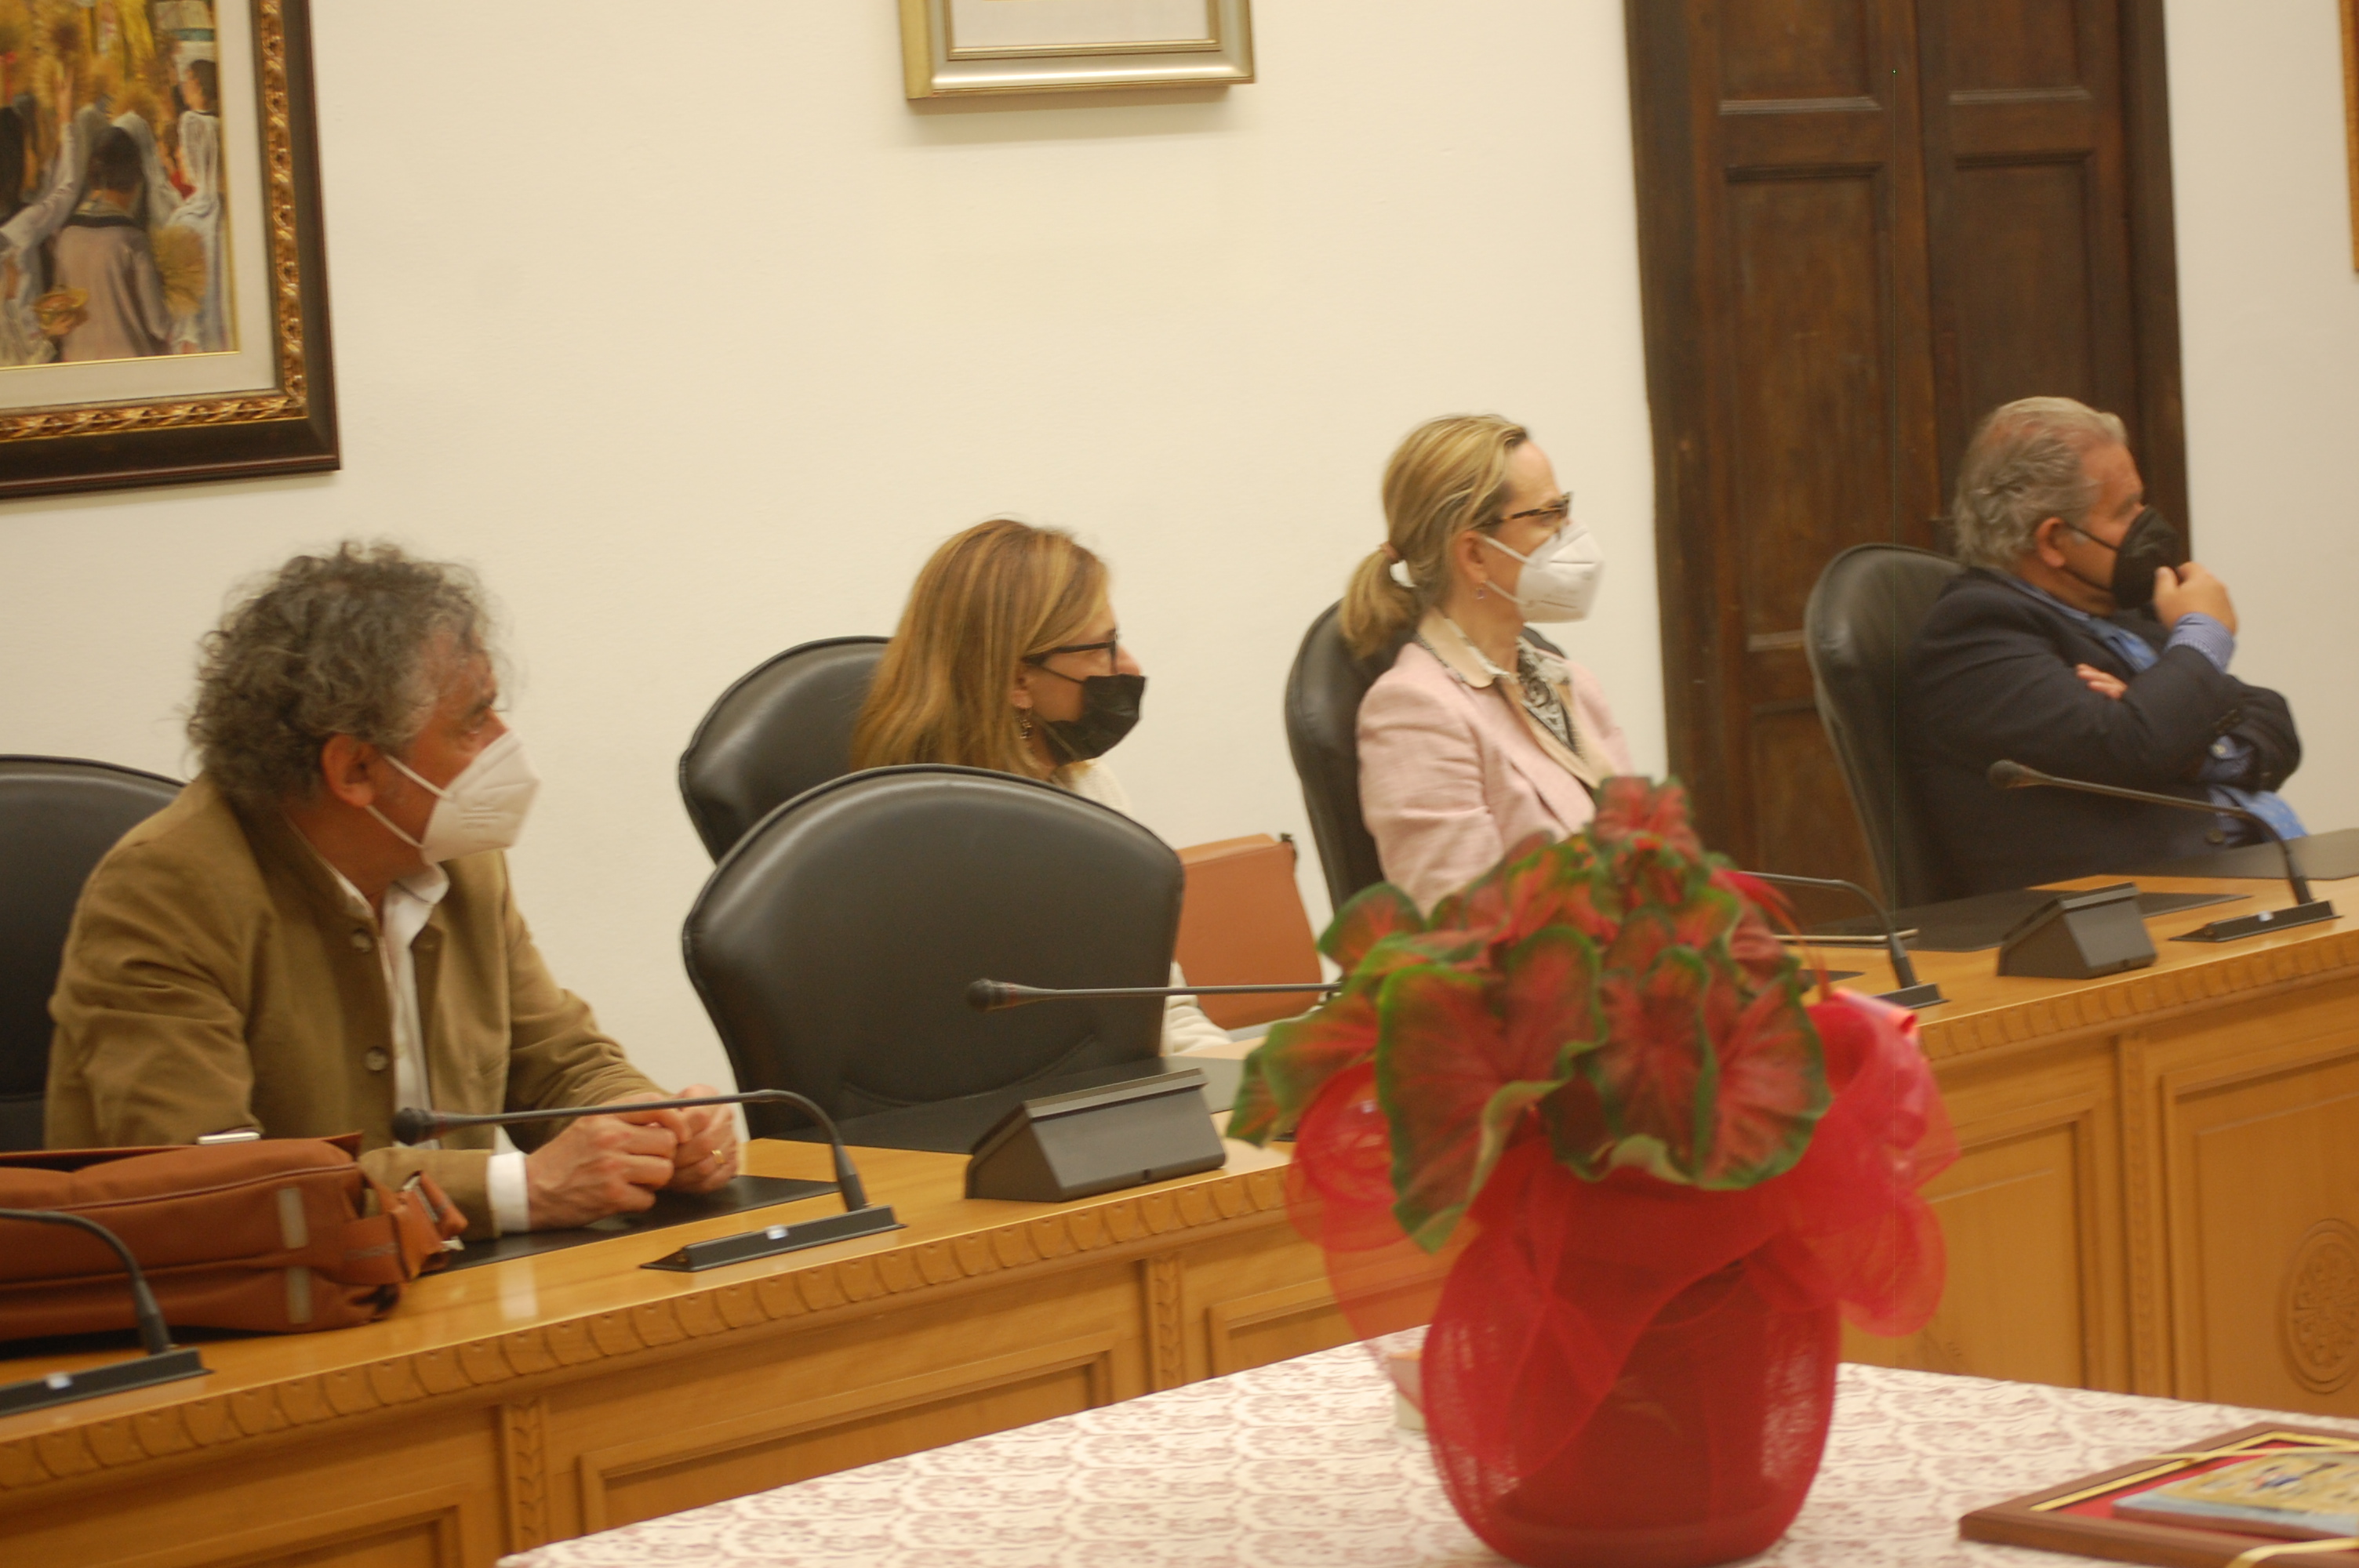 Da sinistra: il dirigente Antonio Ninni Pillai, il capo di gabinetto Alessandra Orrù, la dirigente Simonetta Negrini e il direttore generale Aldo Urru